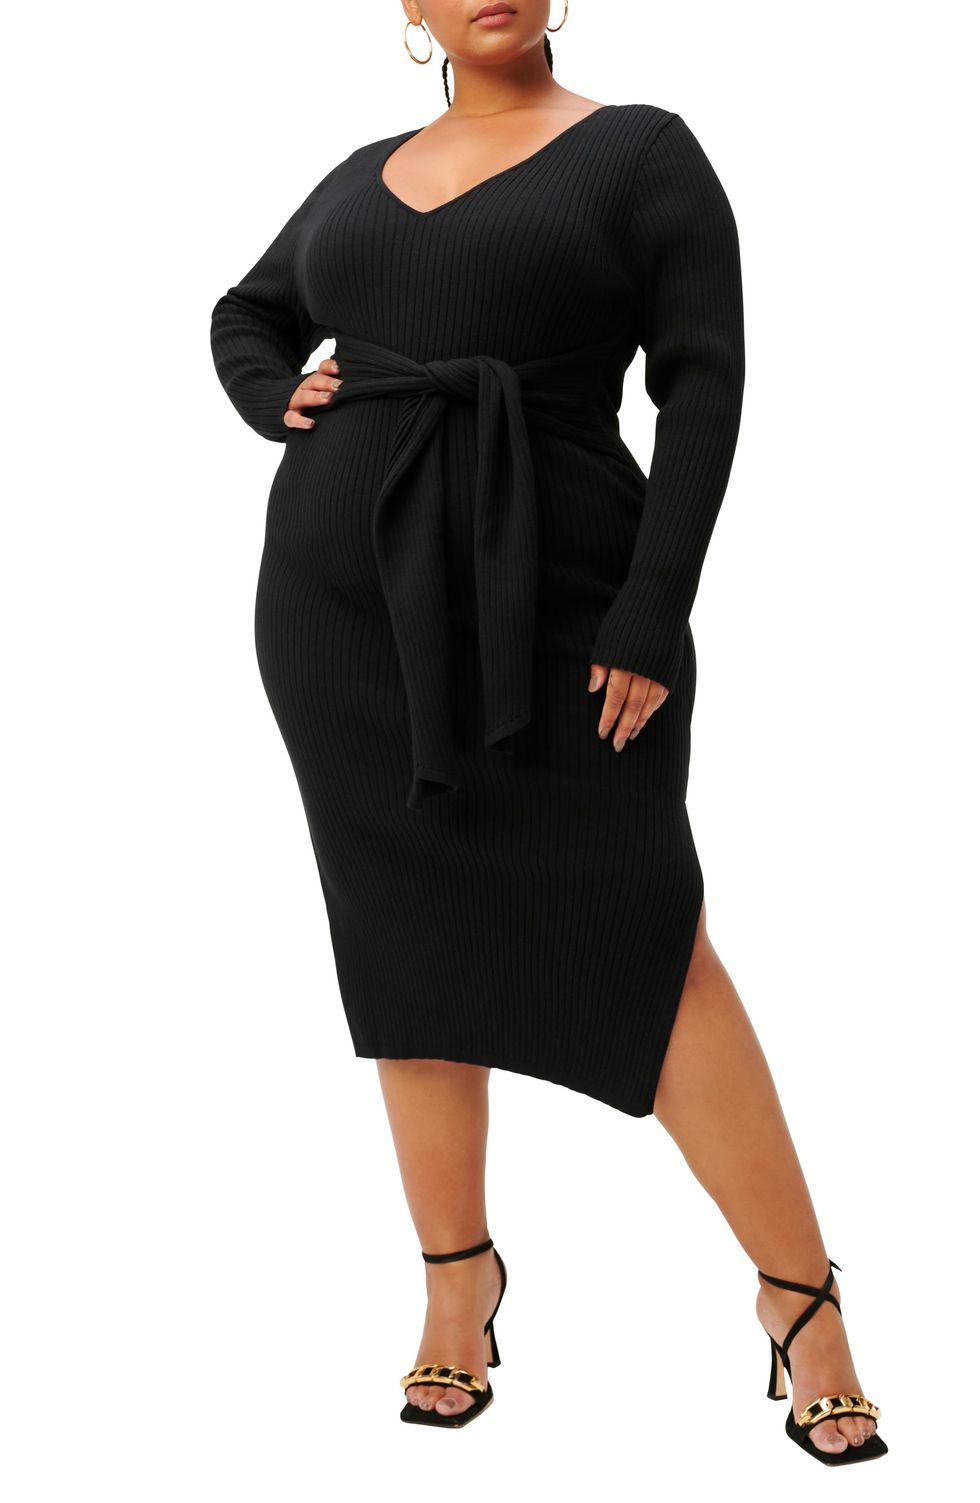 Plus Size Women's Long Sleeve Belted Body-Con Dress